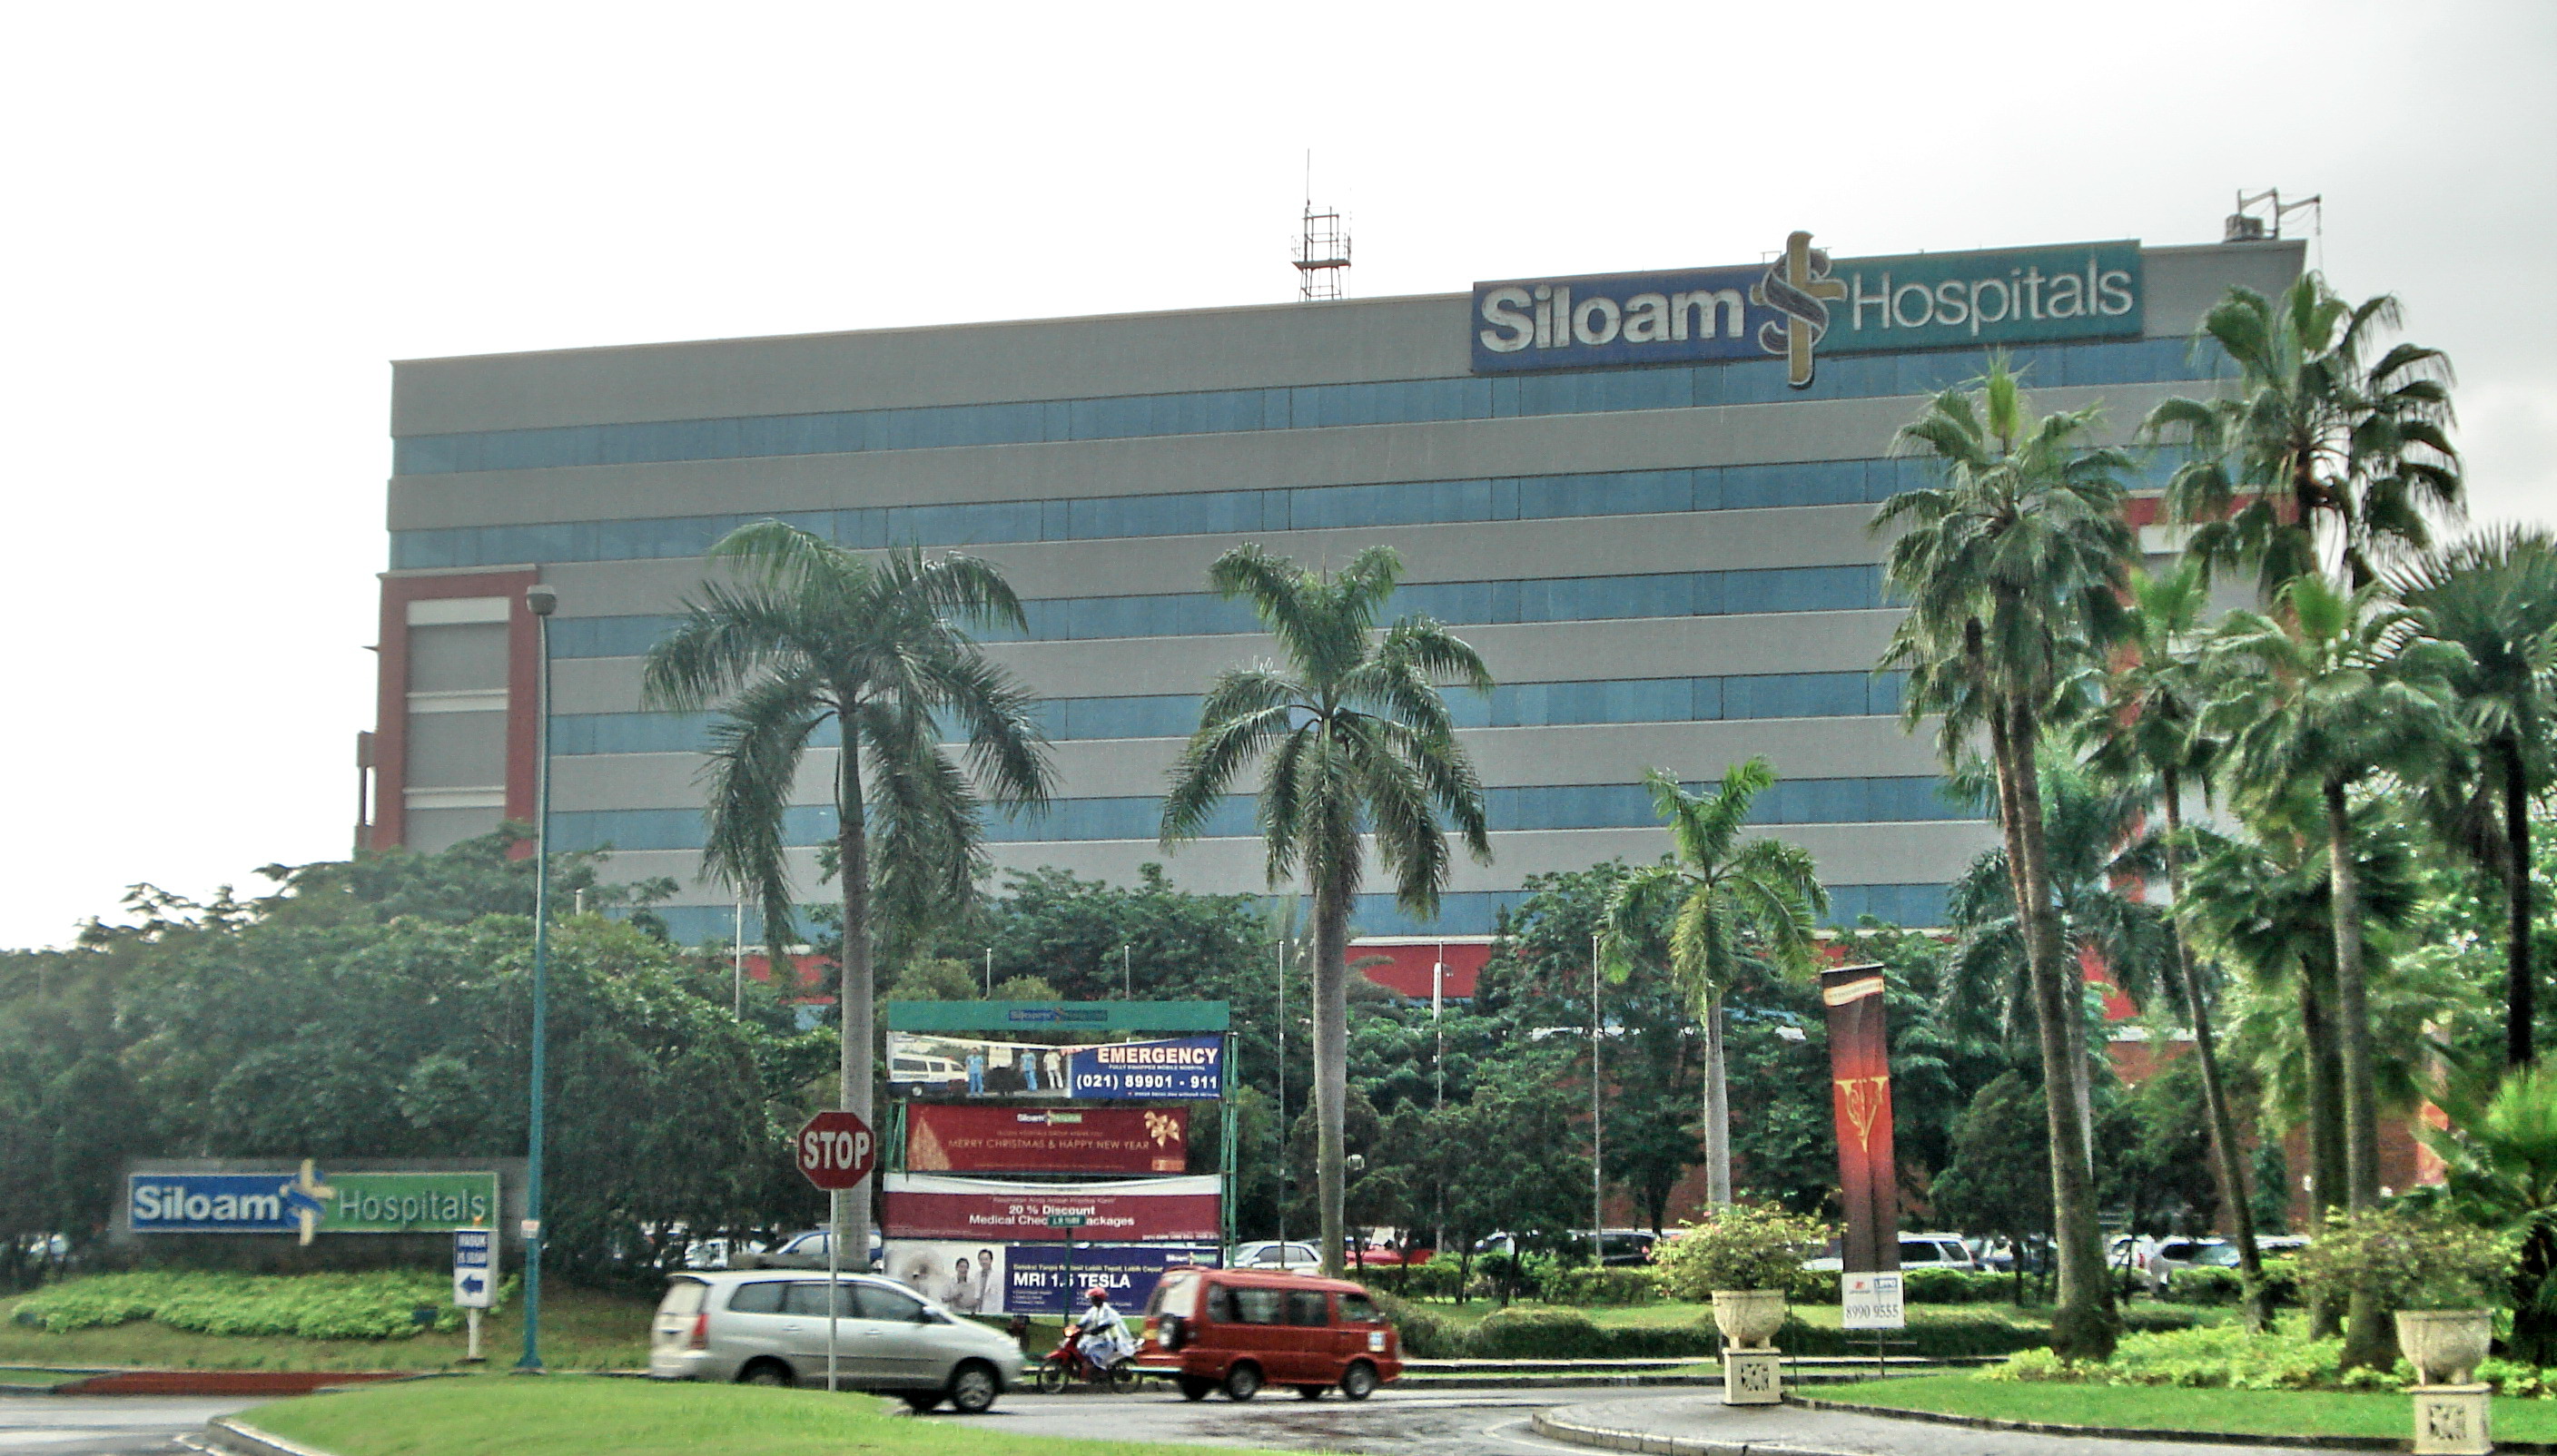 Rumah Sakit Siloam Wikipedia Bahasa Indonesia Ensiklopedia Bebas